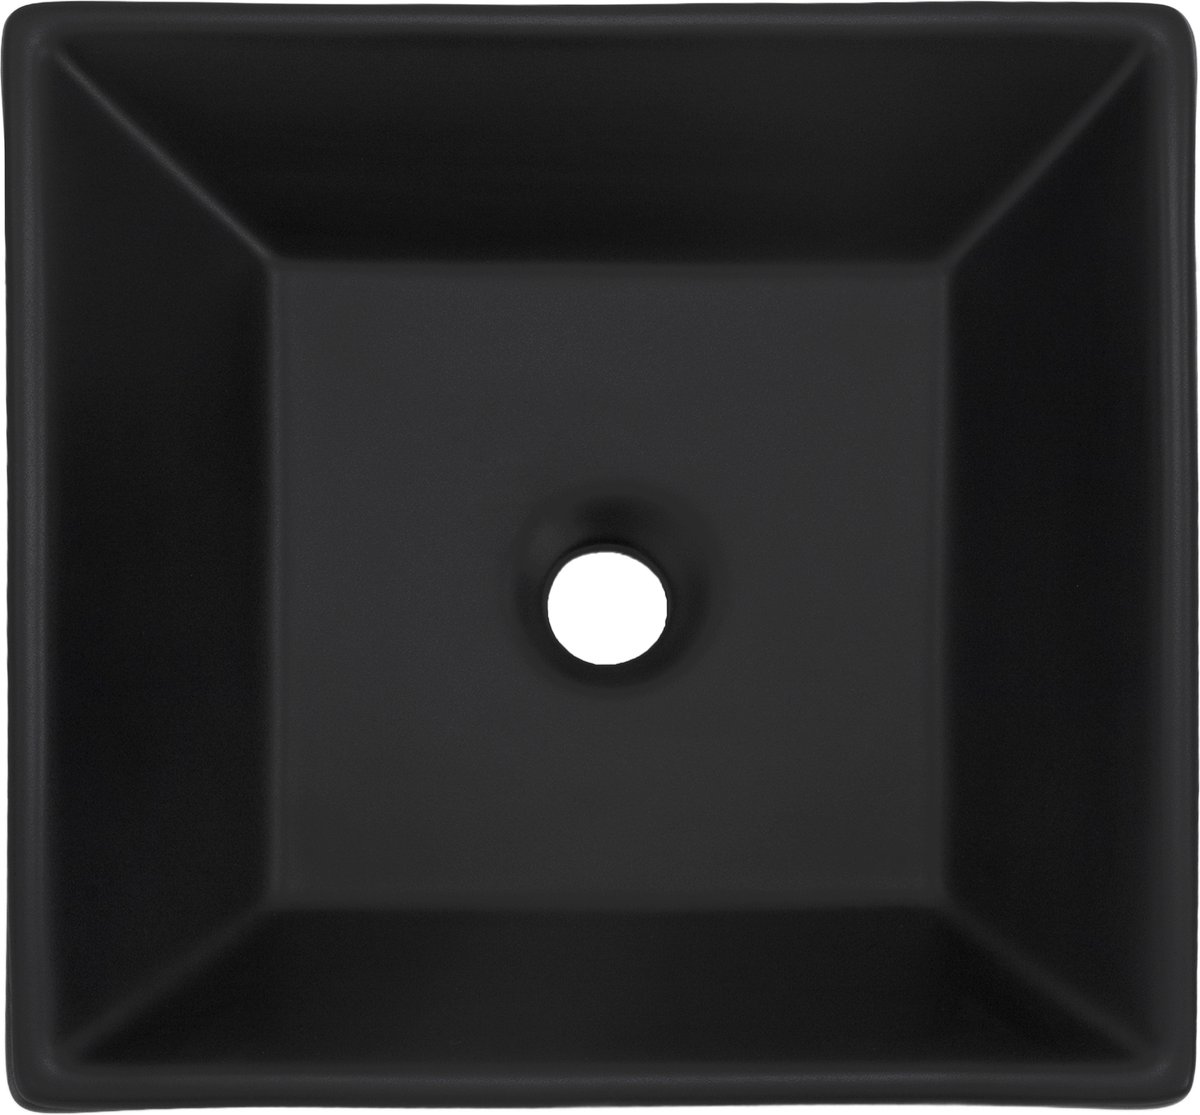 Wastafel Vierkante Vorm 41x41x12 Cm Keramisch Ml-design - Zwart